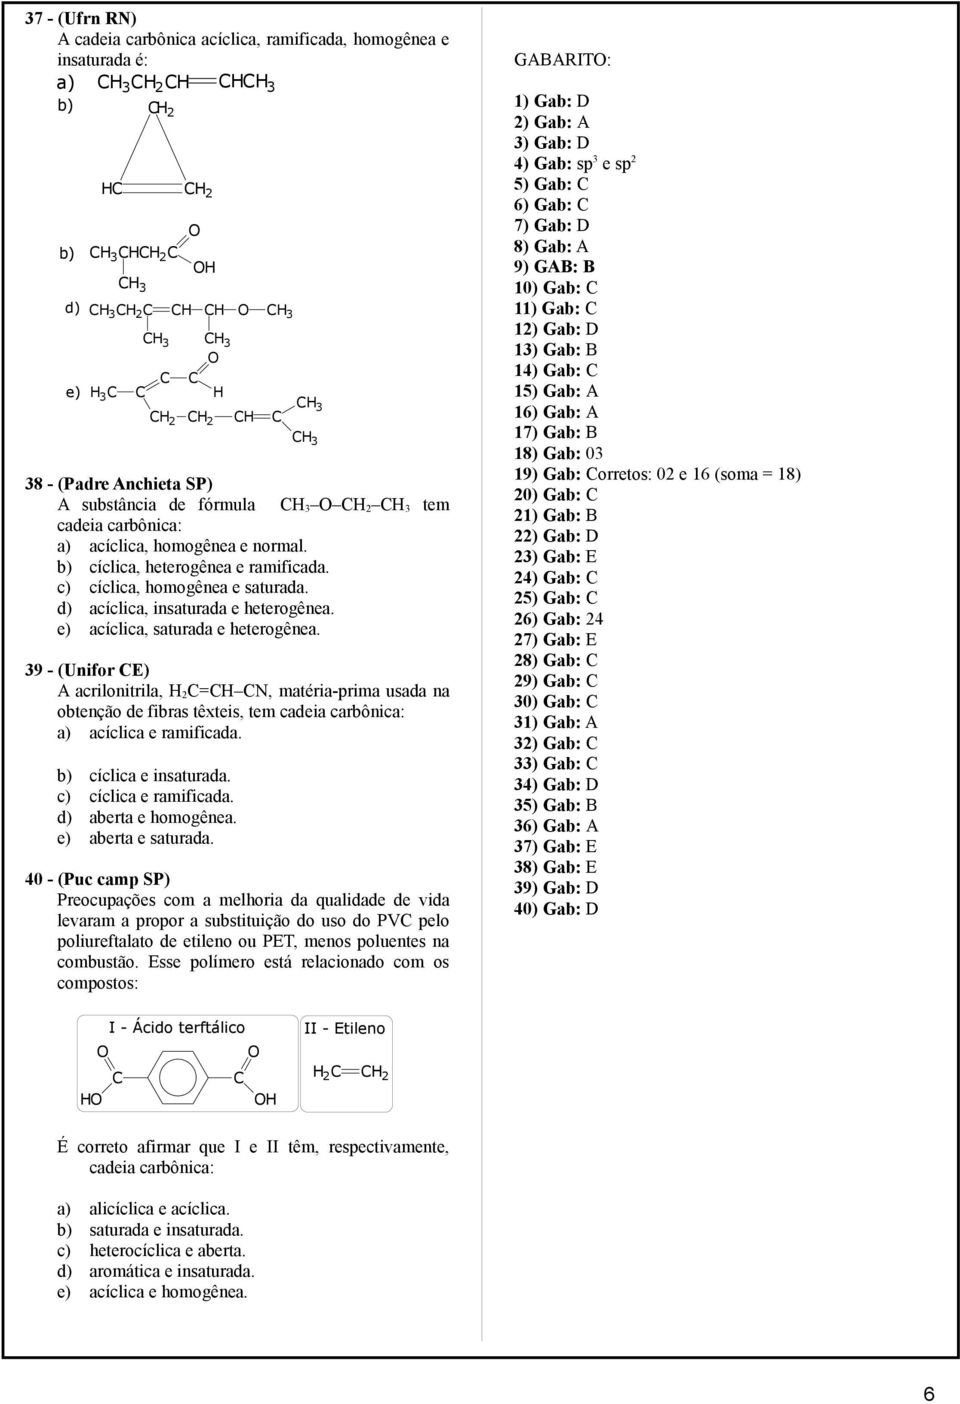 39 - (Unifor E) A acrilonitrila, 2=, matéria-prima usada na obtenção de fibras têxteis, tem cadeia carbônica: a) acíclica e ramificada. b) cíclica e insaturada. c) cíclica e ramificada.